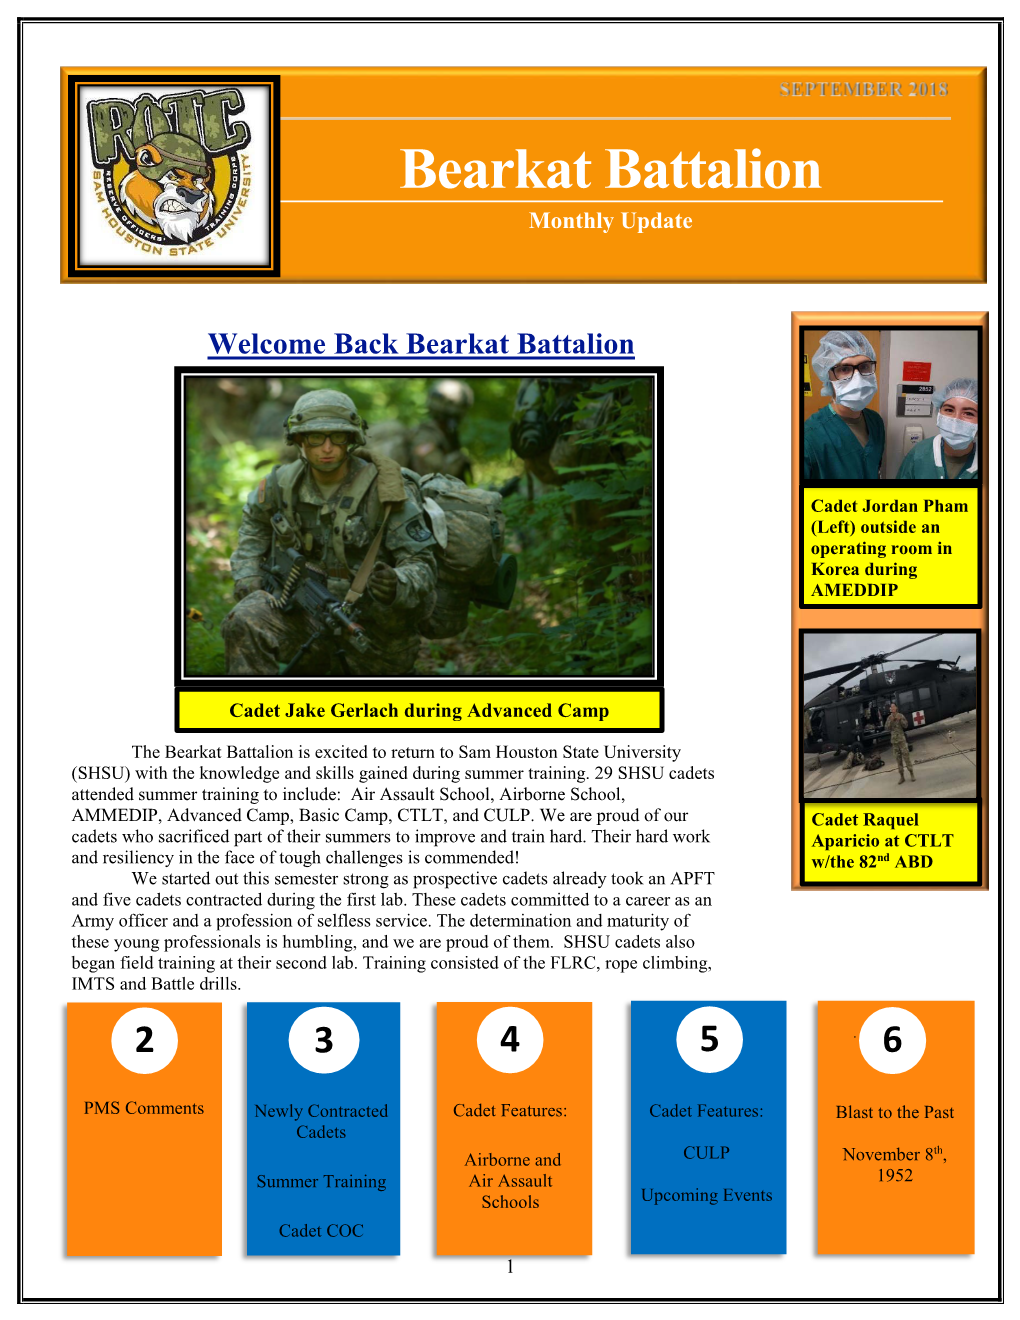 Bearkat Battalion Monthly Update